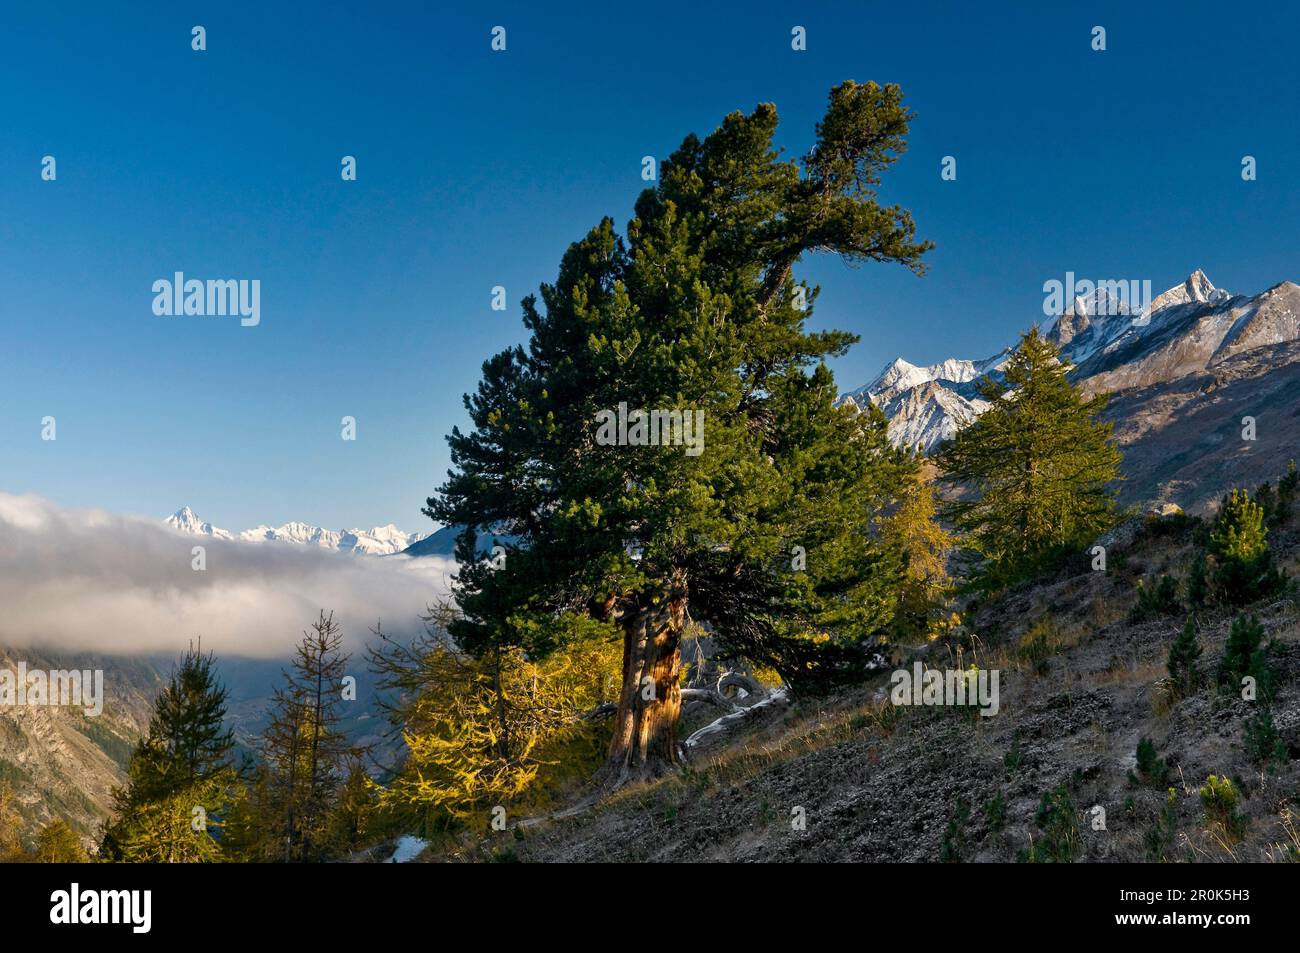 Swiss pine (Pinus cembra), Zermatt, Canton of Valais, Switzerland Stock Photo